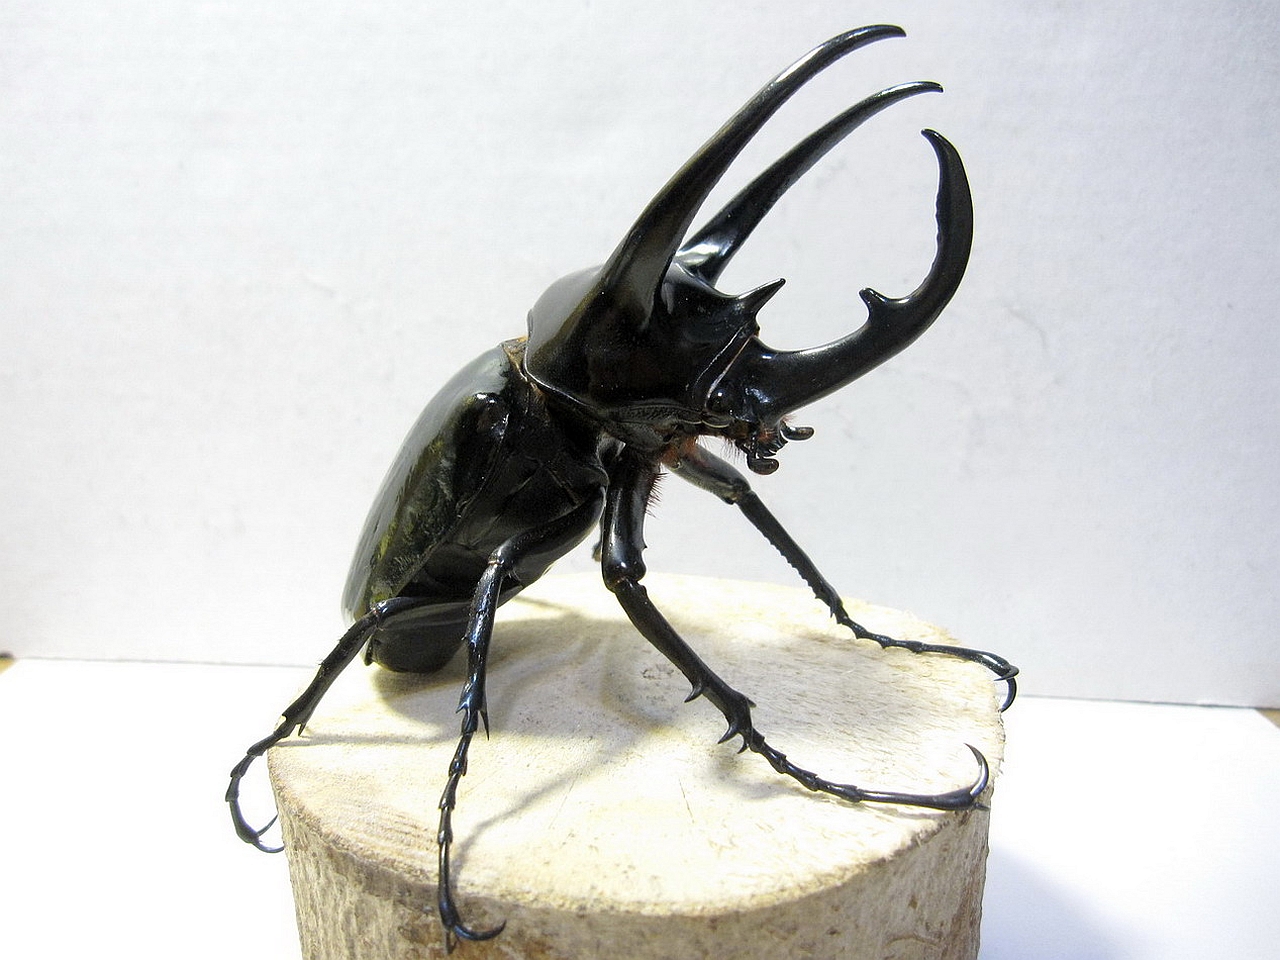 Atlas Beetle #6